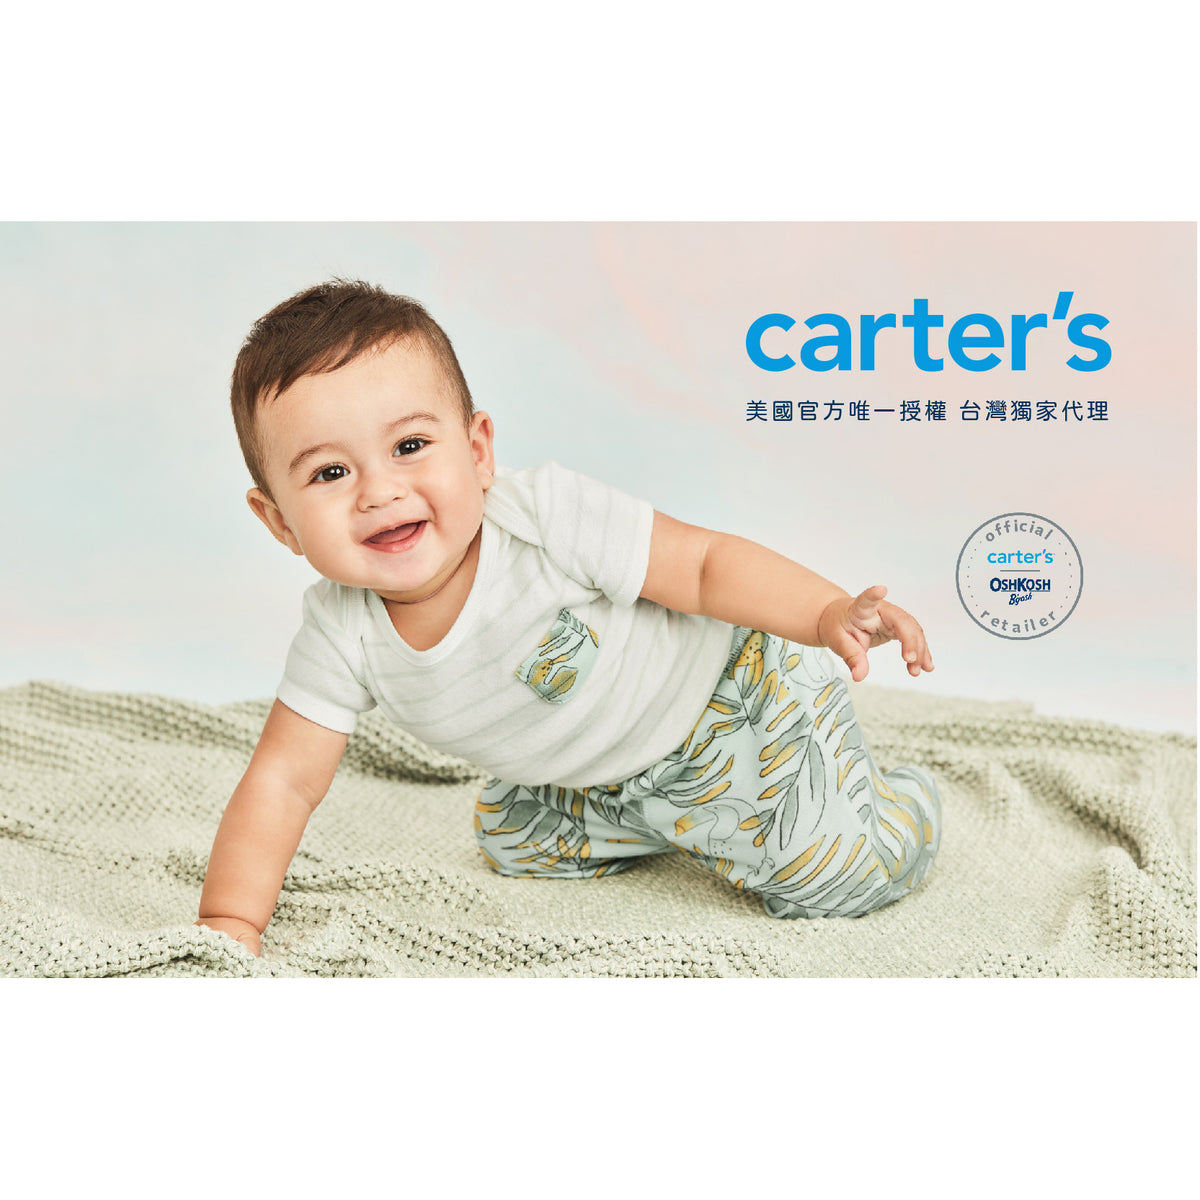 Carter's 恐龍衝浪趣上衣(6M-24M)